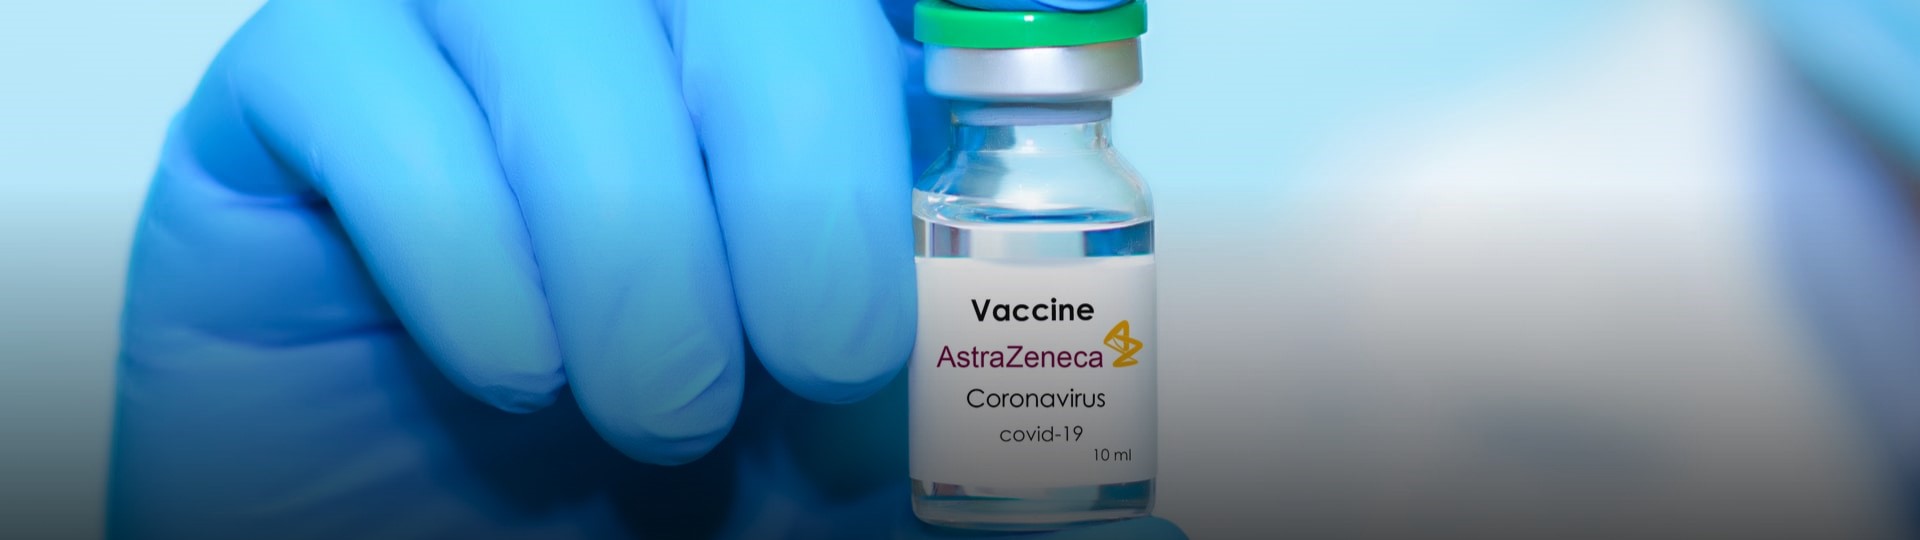 Dánsko zcela přestane používat vakcínu firmy AstraZeneca